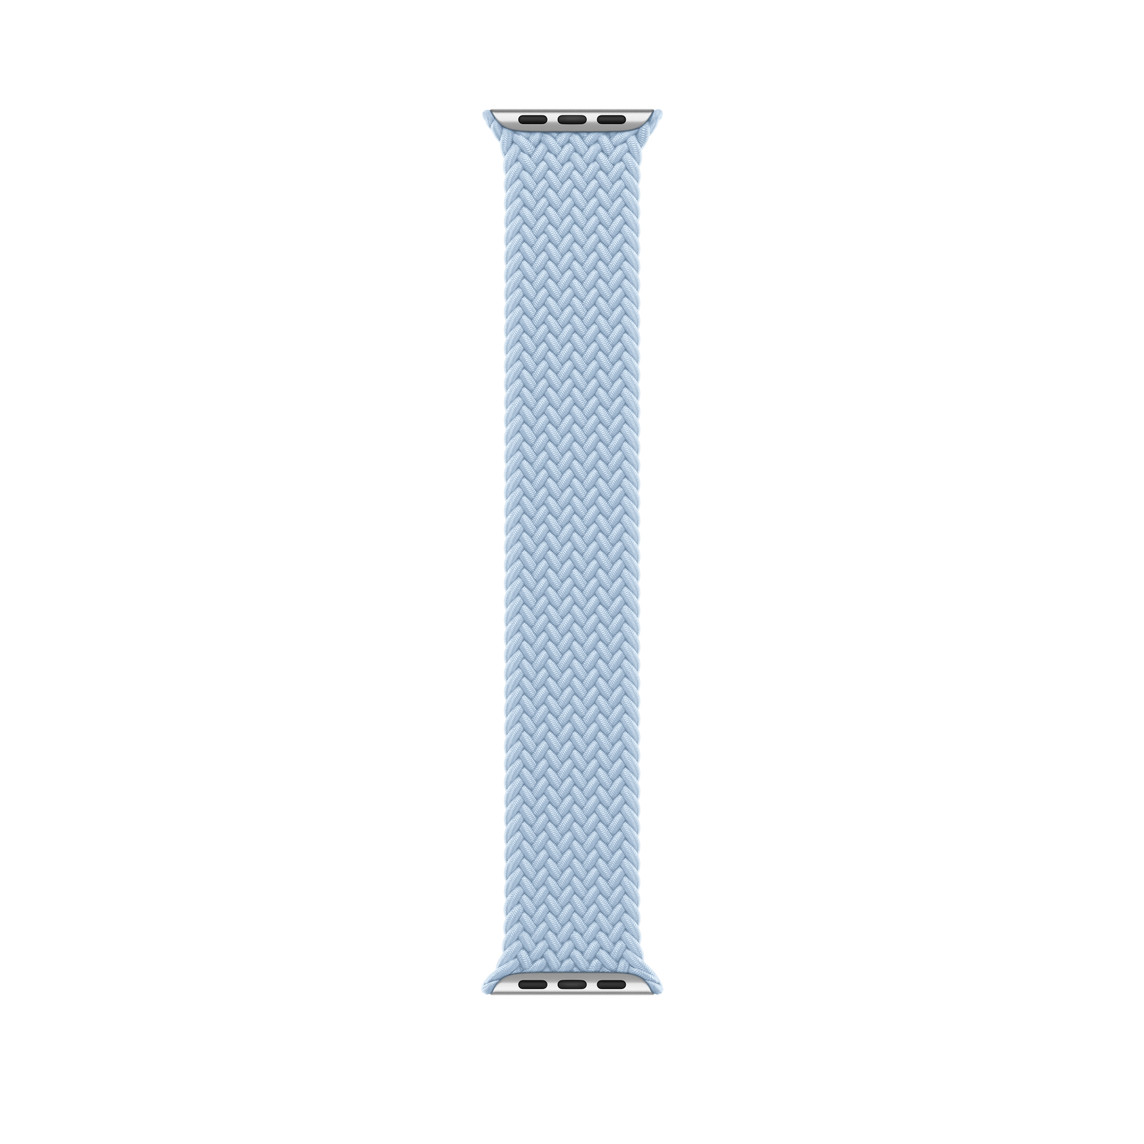 Bracelet Boucle unique tressée bleu clair, en polyester tissé et fils de silicone sans fermoir ni attache